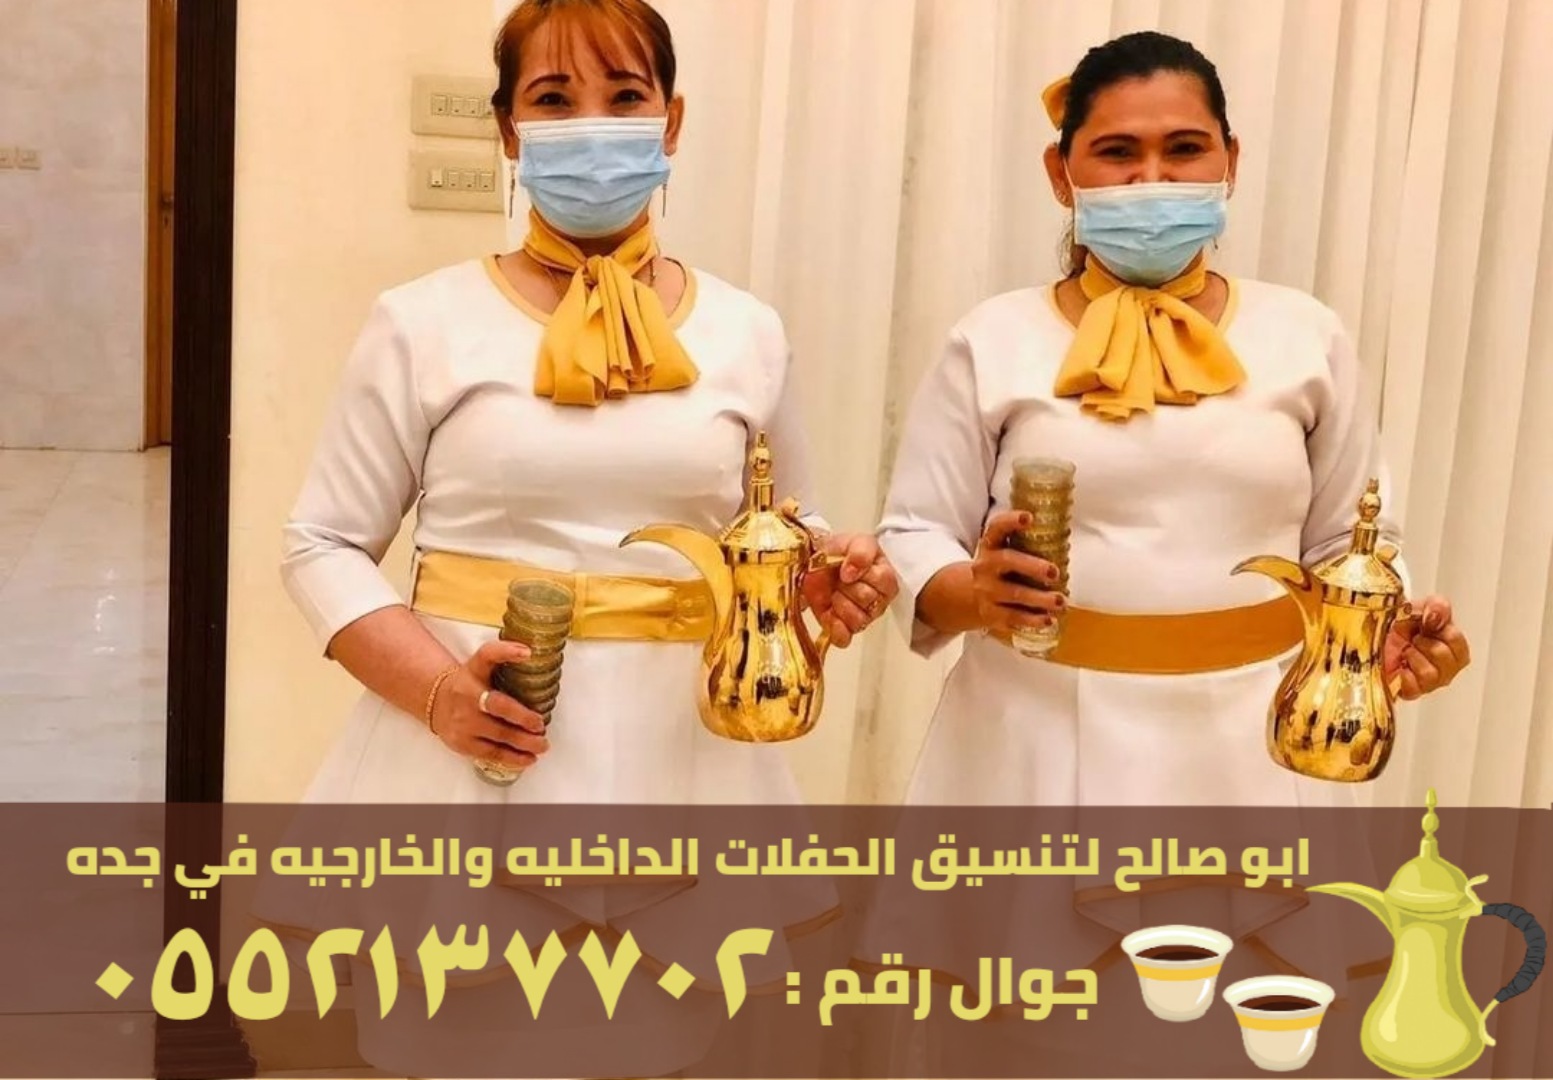 صبابابين قهوة رجال ونساء في جدة, 0552137702 P_2456wy8op5